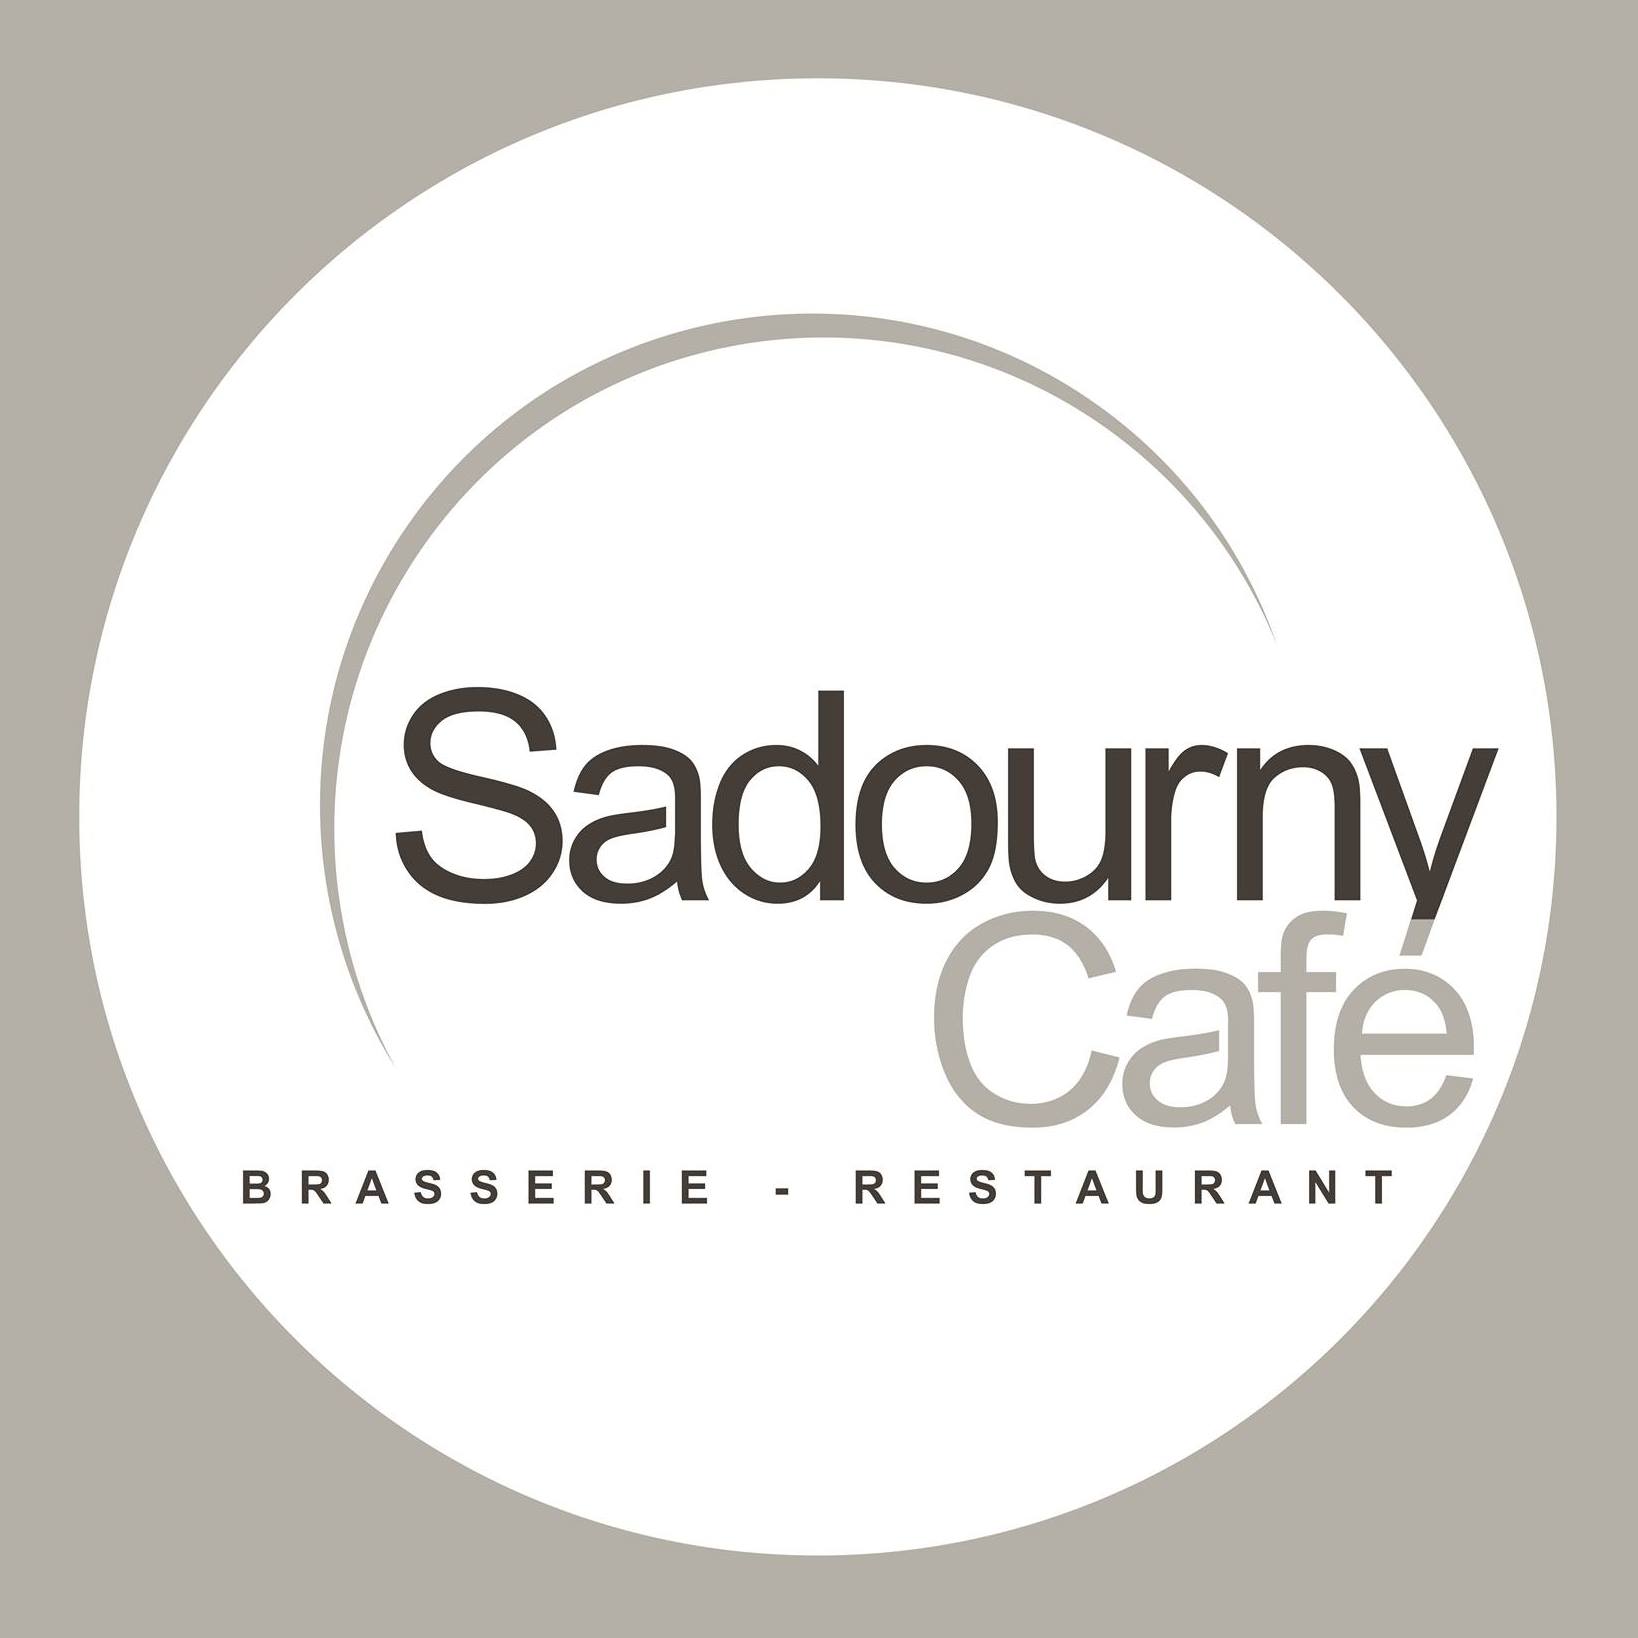 Sadourny café